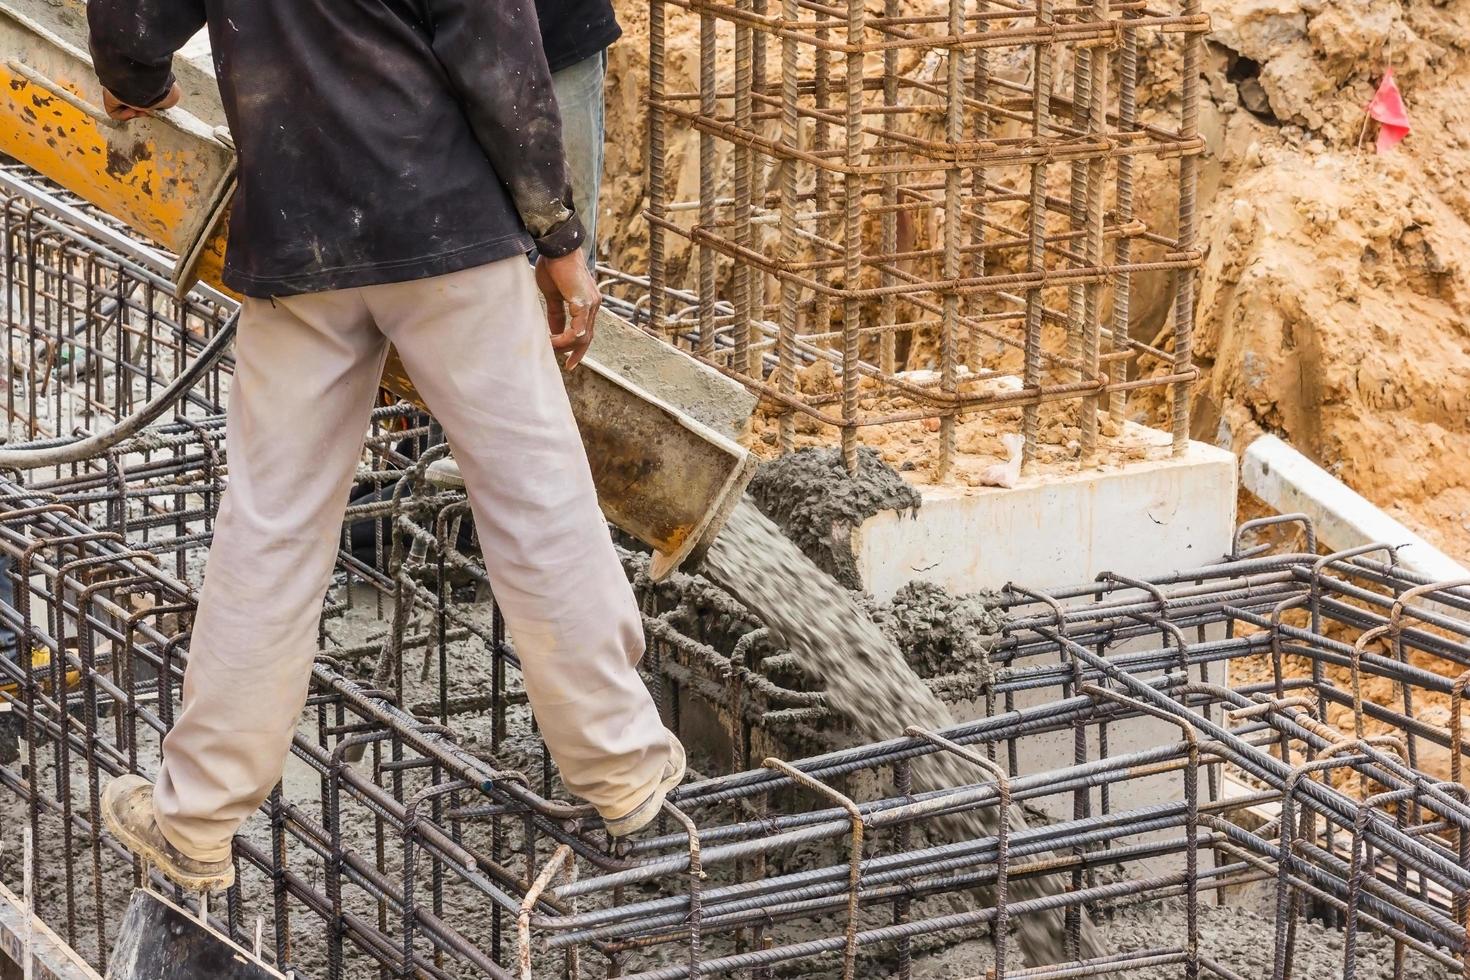 beton gieten tijdens commerciële betonnen vloeren van gebouwen in bouwplaats foto